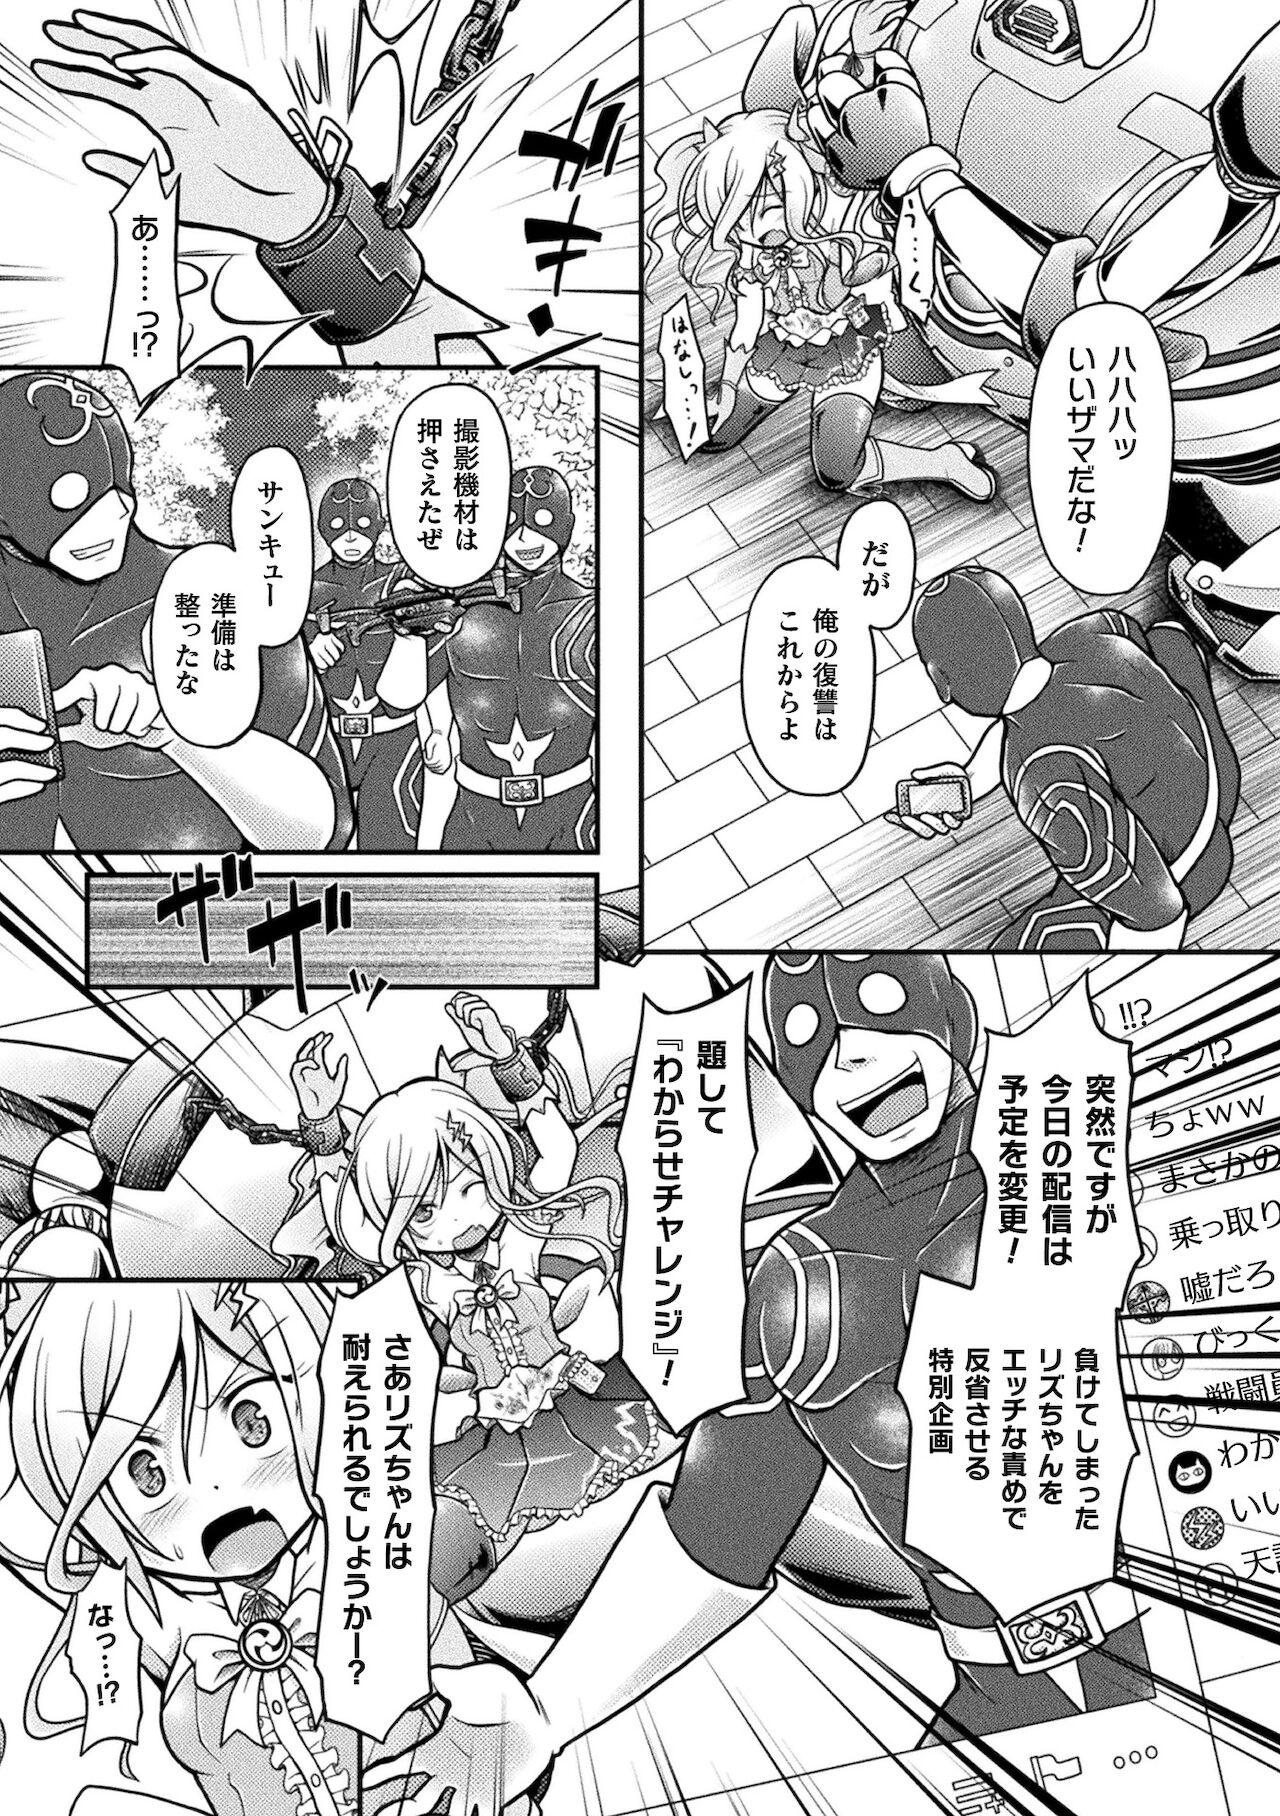 2D Comic Magazine Mesugaki Henshin Heroine Kikaikan Seisai Hijou no Wakarase Machine de Renzoku Loli Acme Vol. 2 28